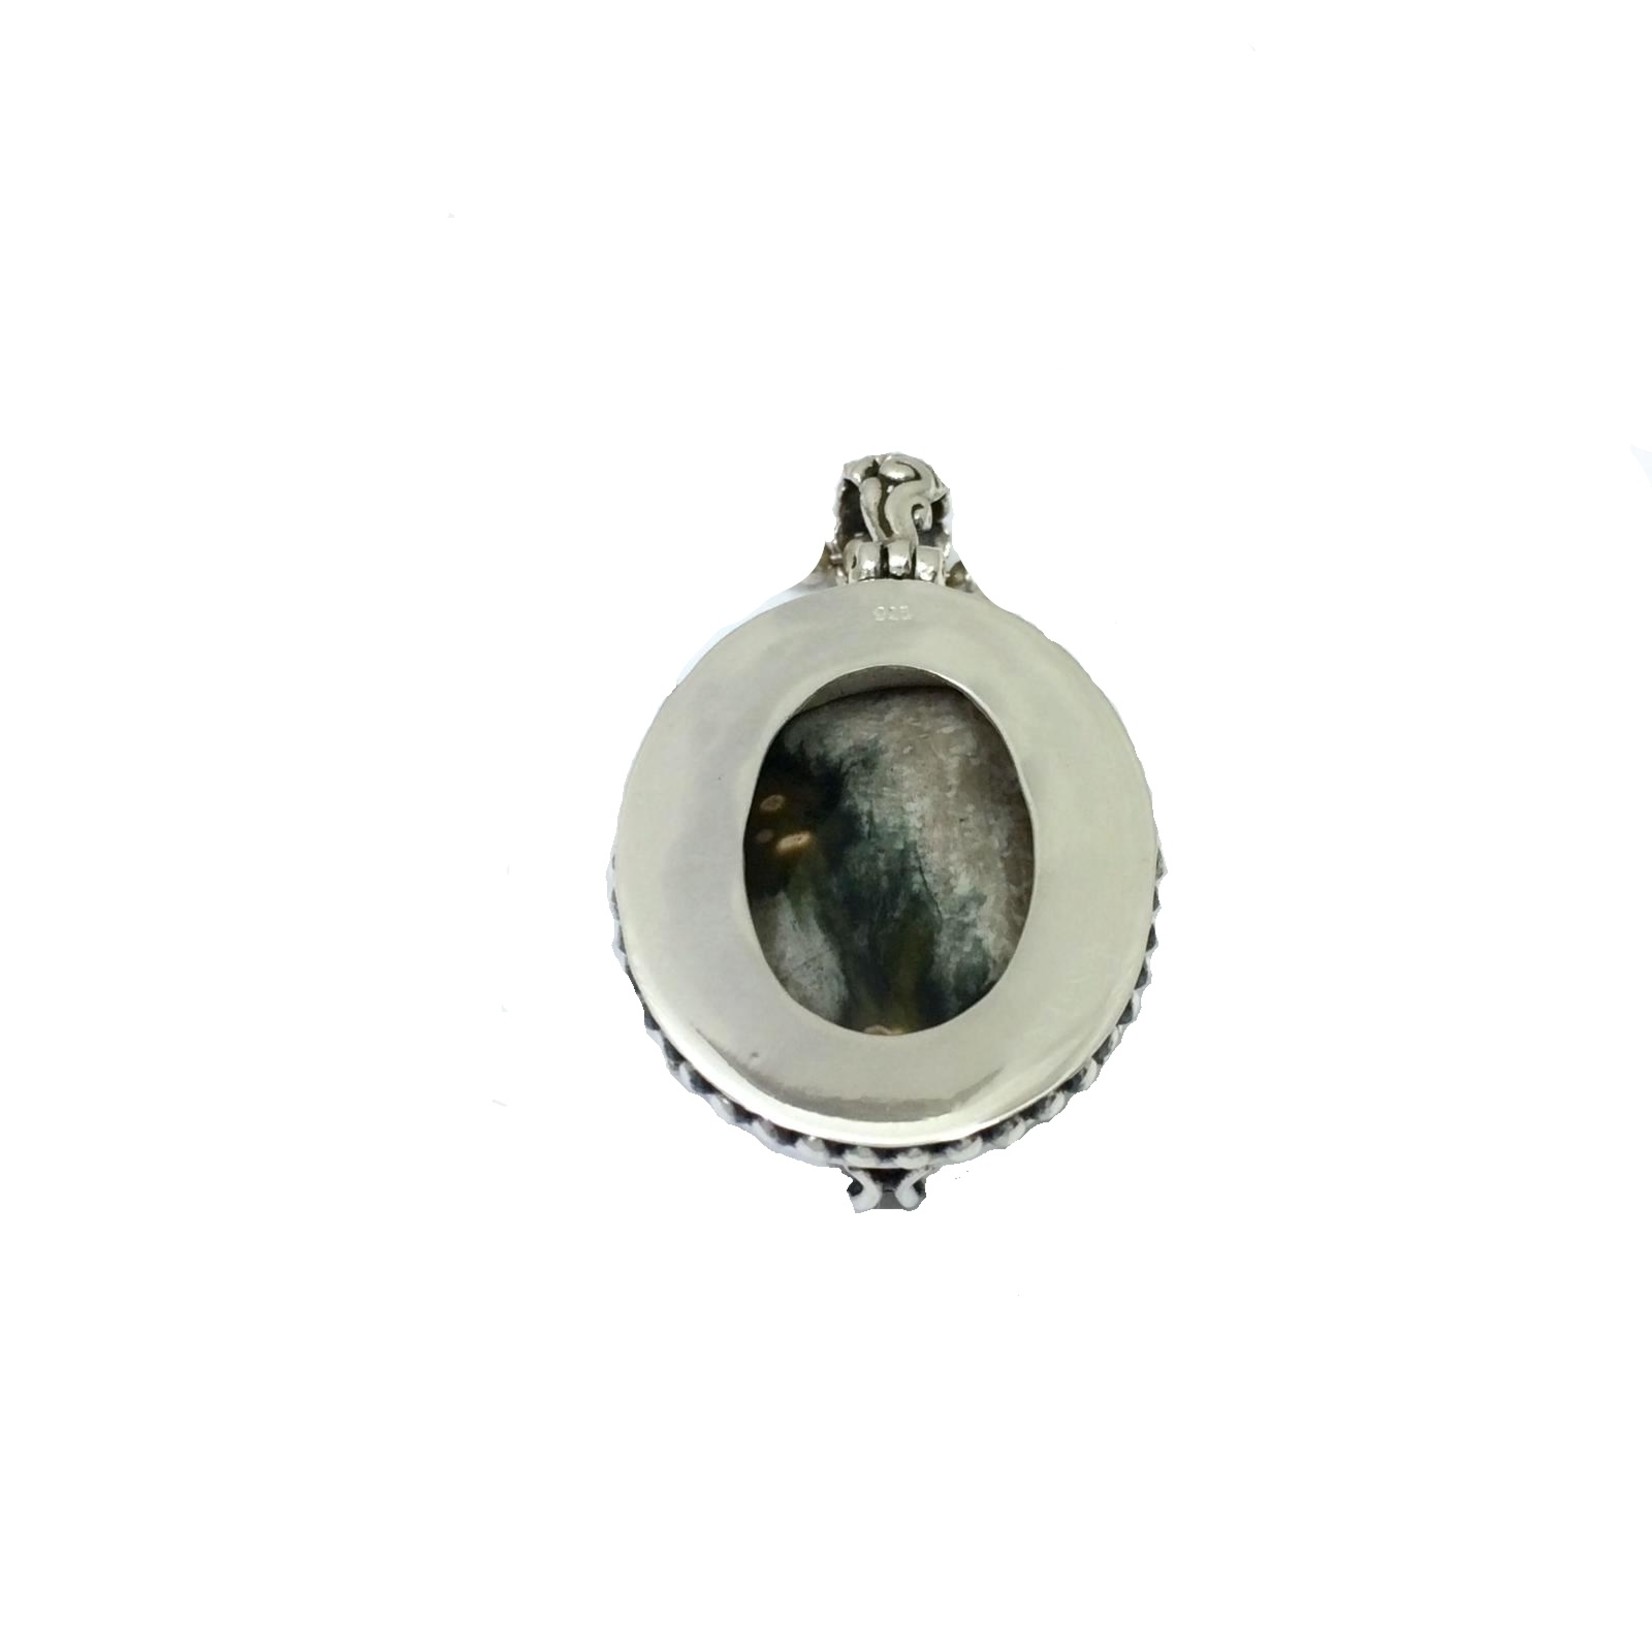 Ocean jasper pendant, oval